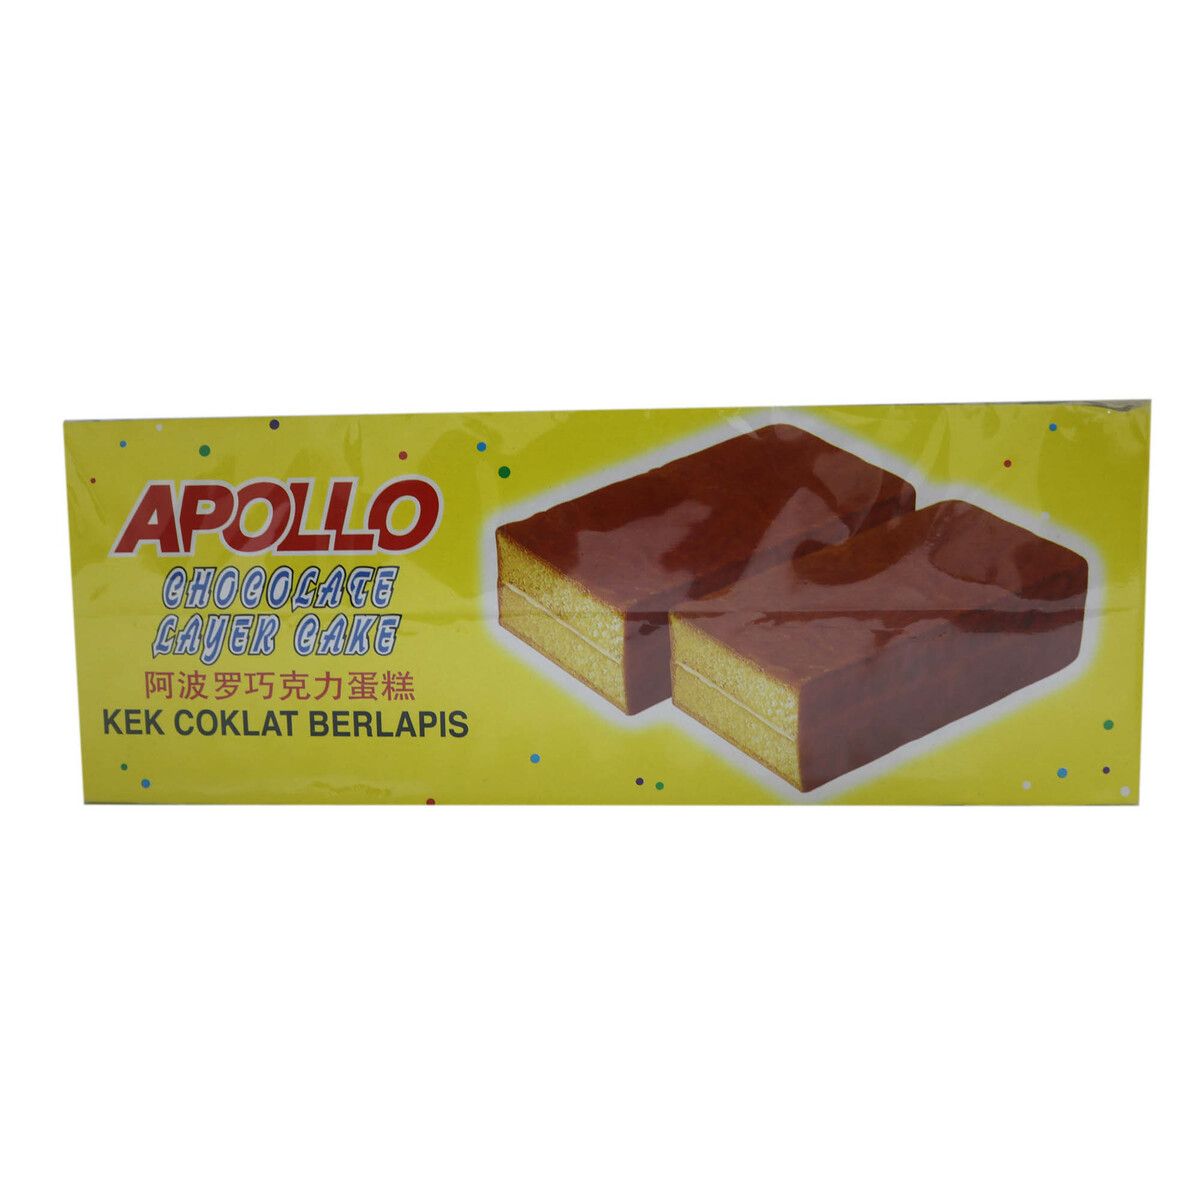 Apollo cake